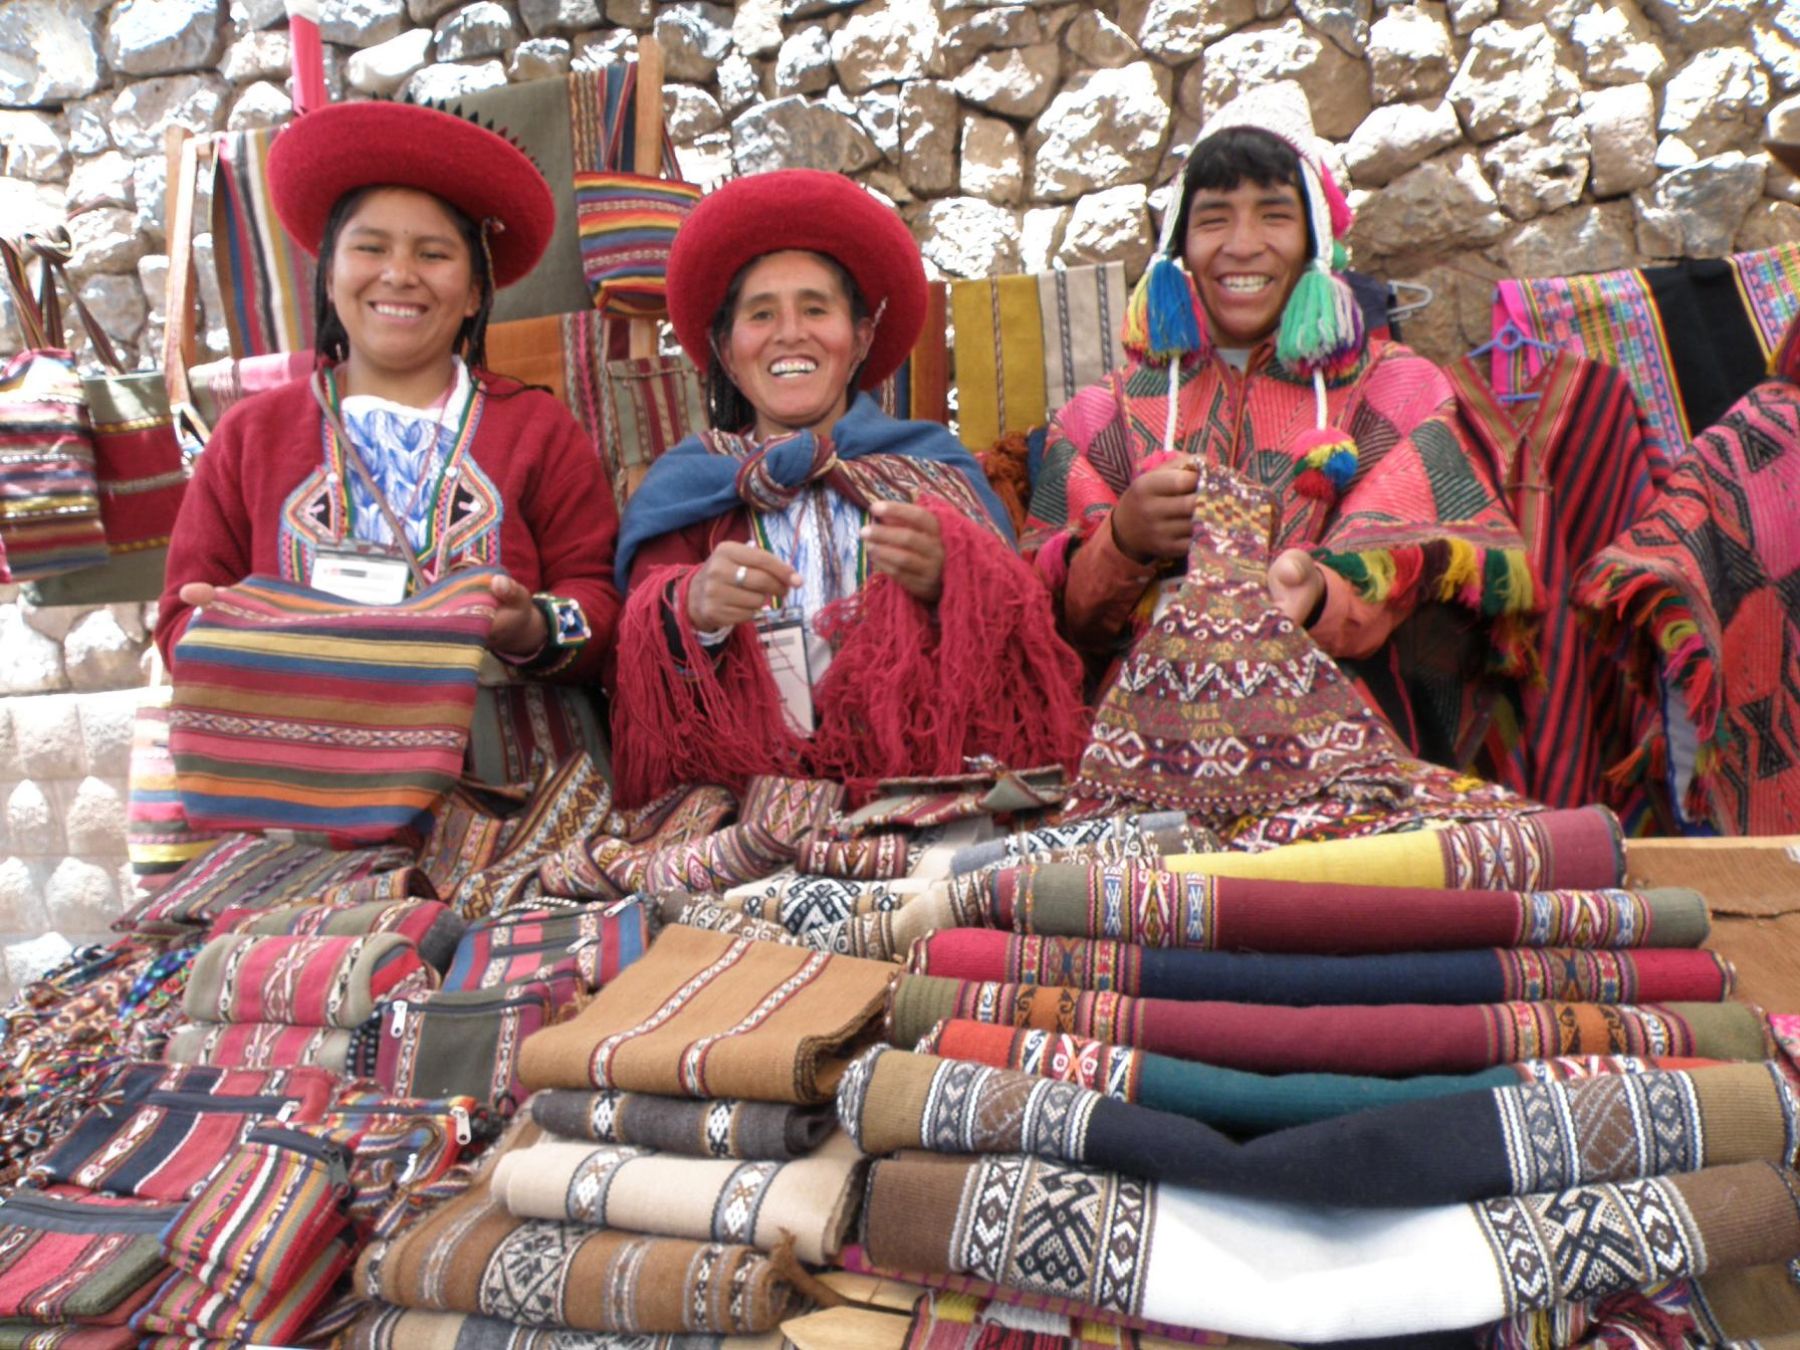 Artesanos de comunidades alejadas de Cusco lucen su producción en palacio incaico de Kusicancha. Foto: ANDINA / Percy Hurtado.